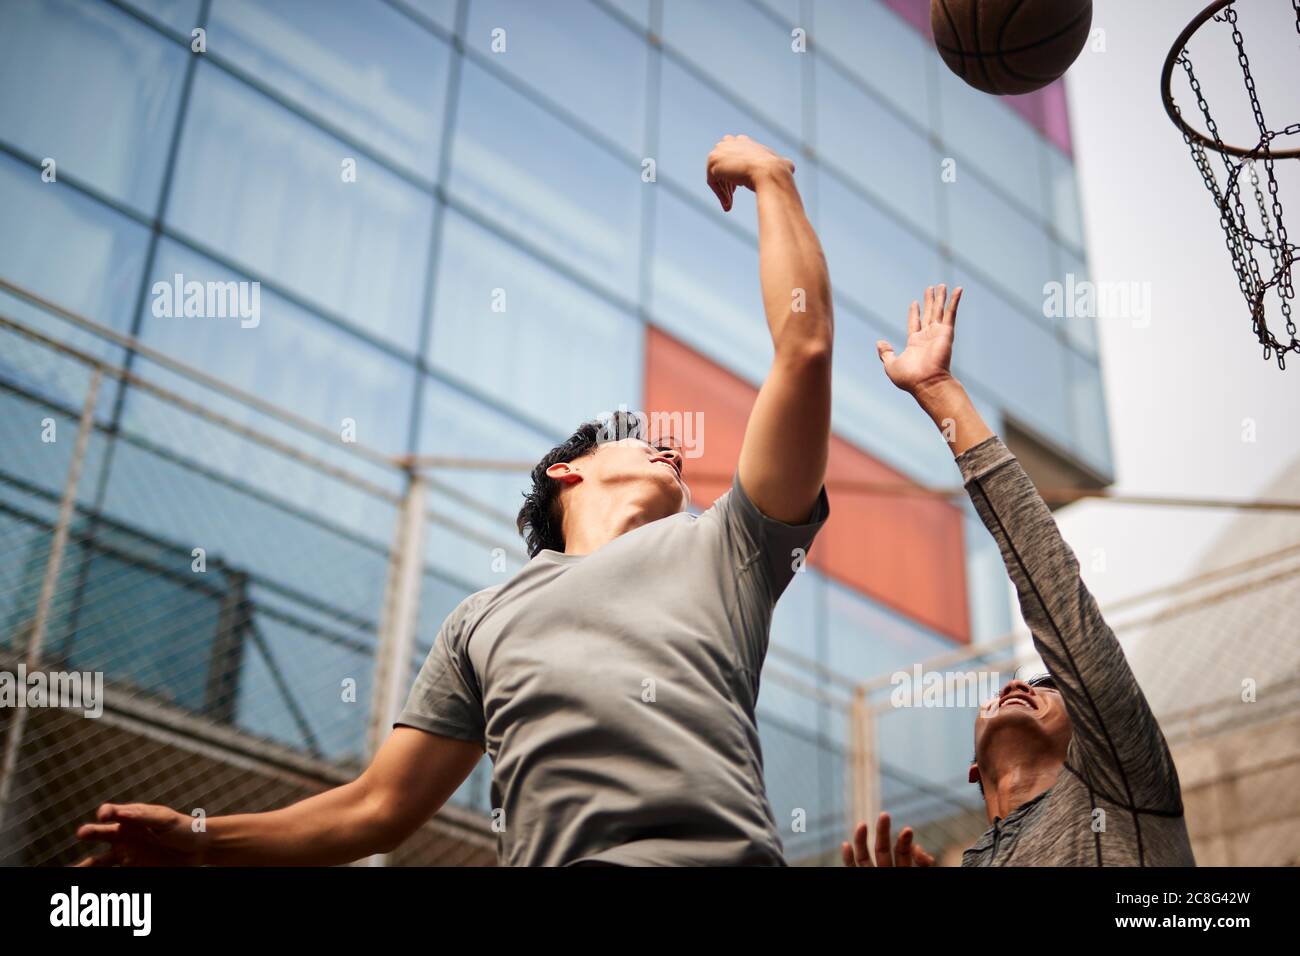 Zwei junge asiatische Männer spielen Basketball gehen für einen Rebound auf dem Outdoor-Platz Stockfoto